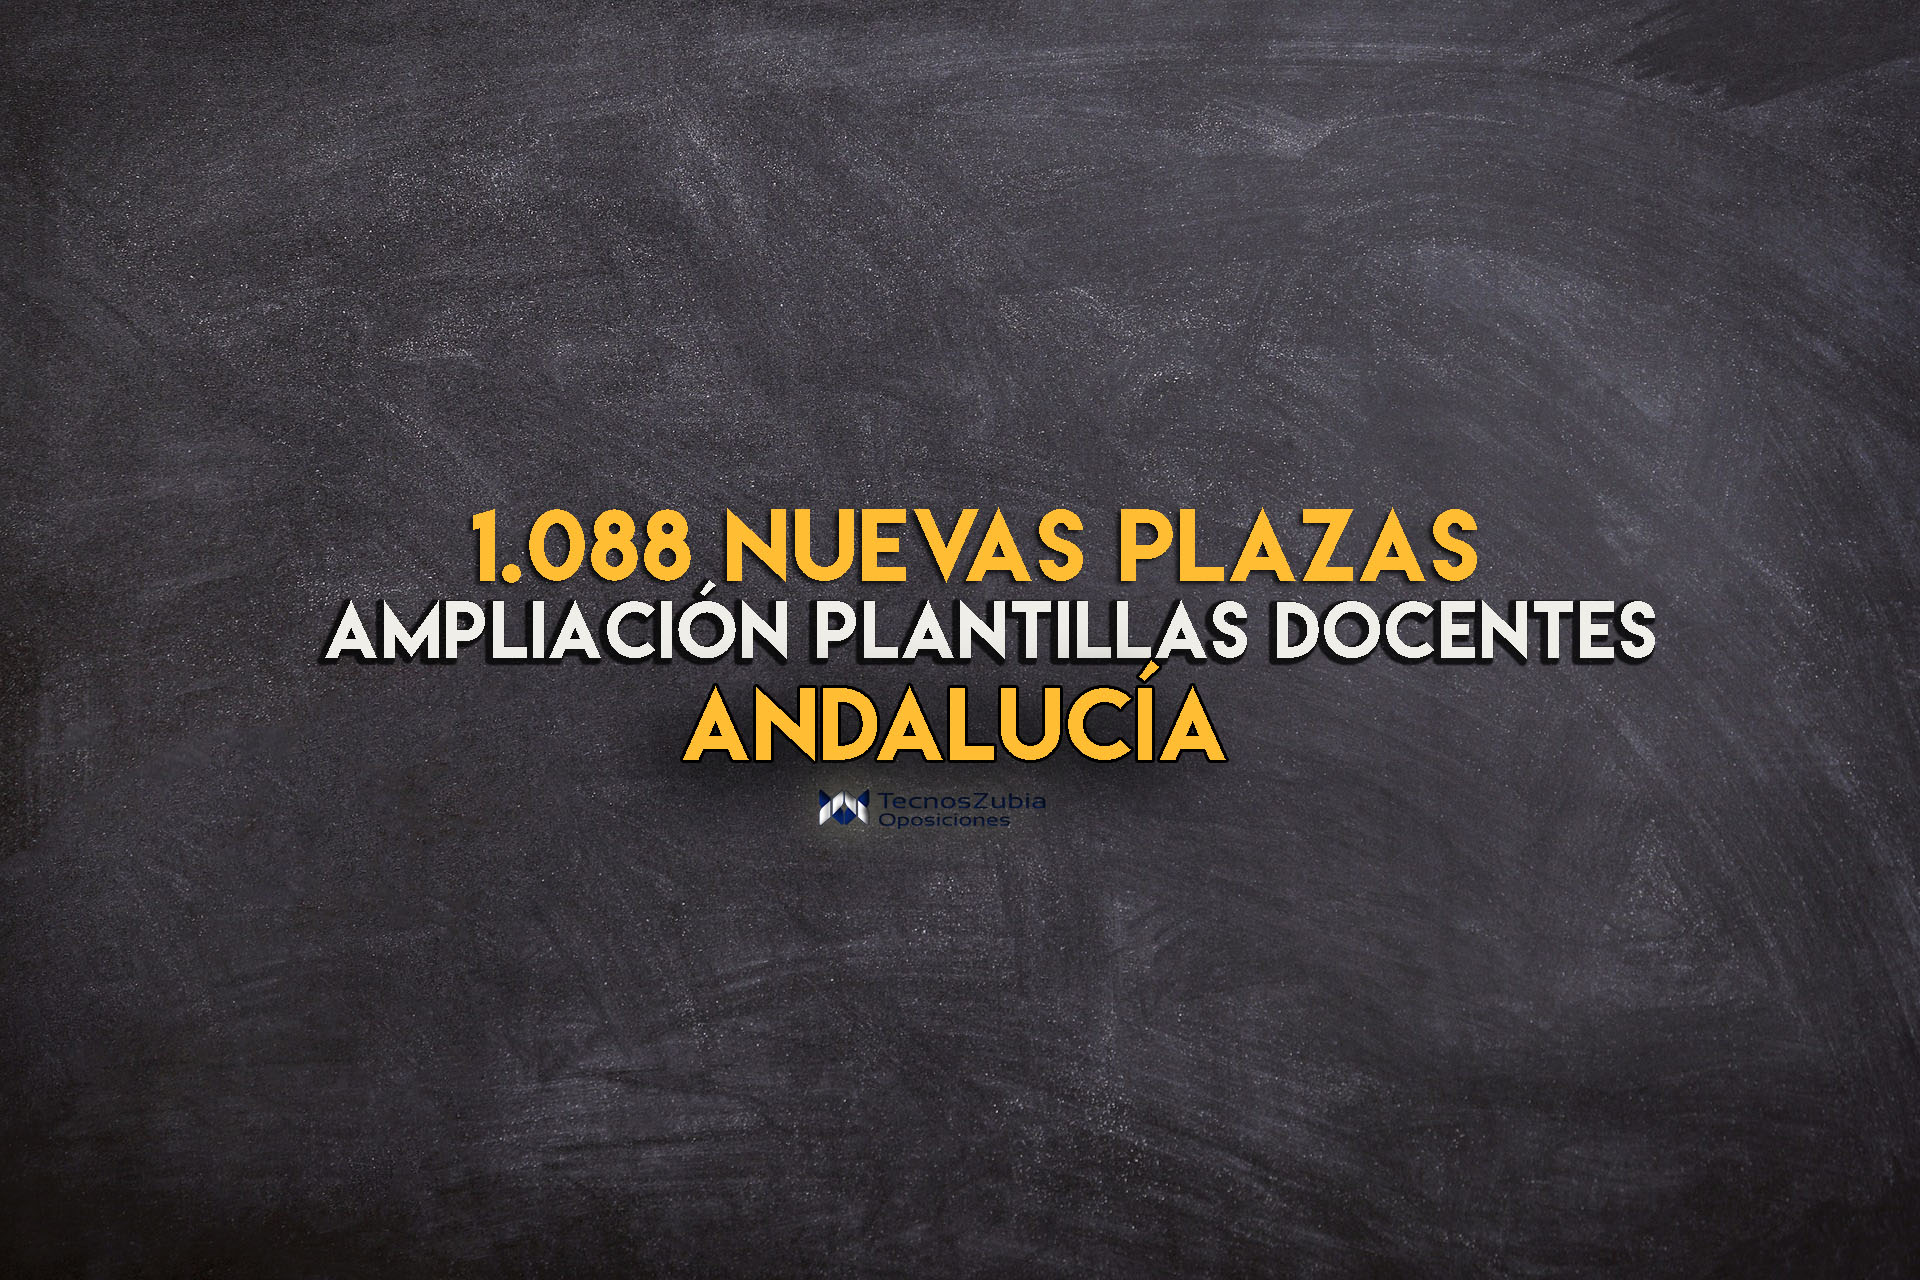 Andalucía. Ampliación plantillas docentes. 2021.